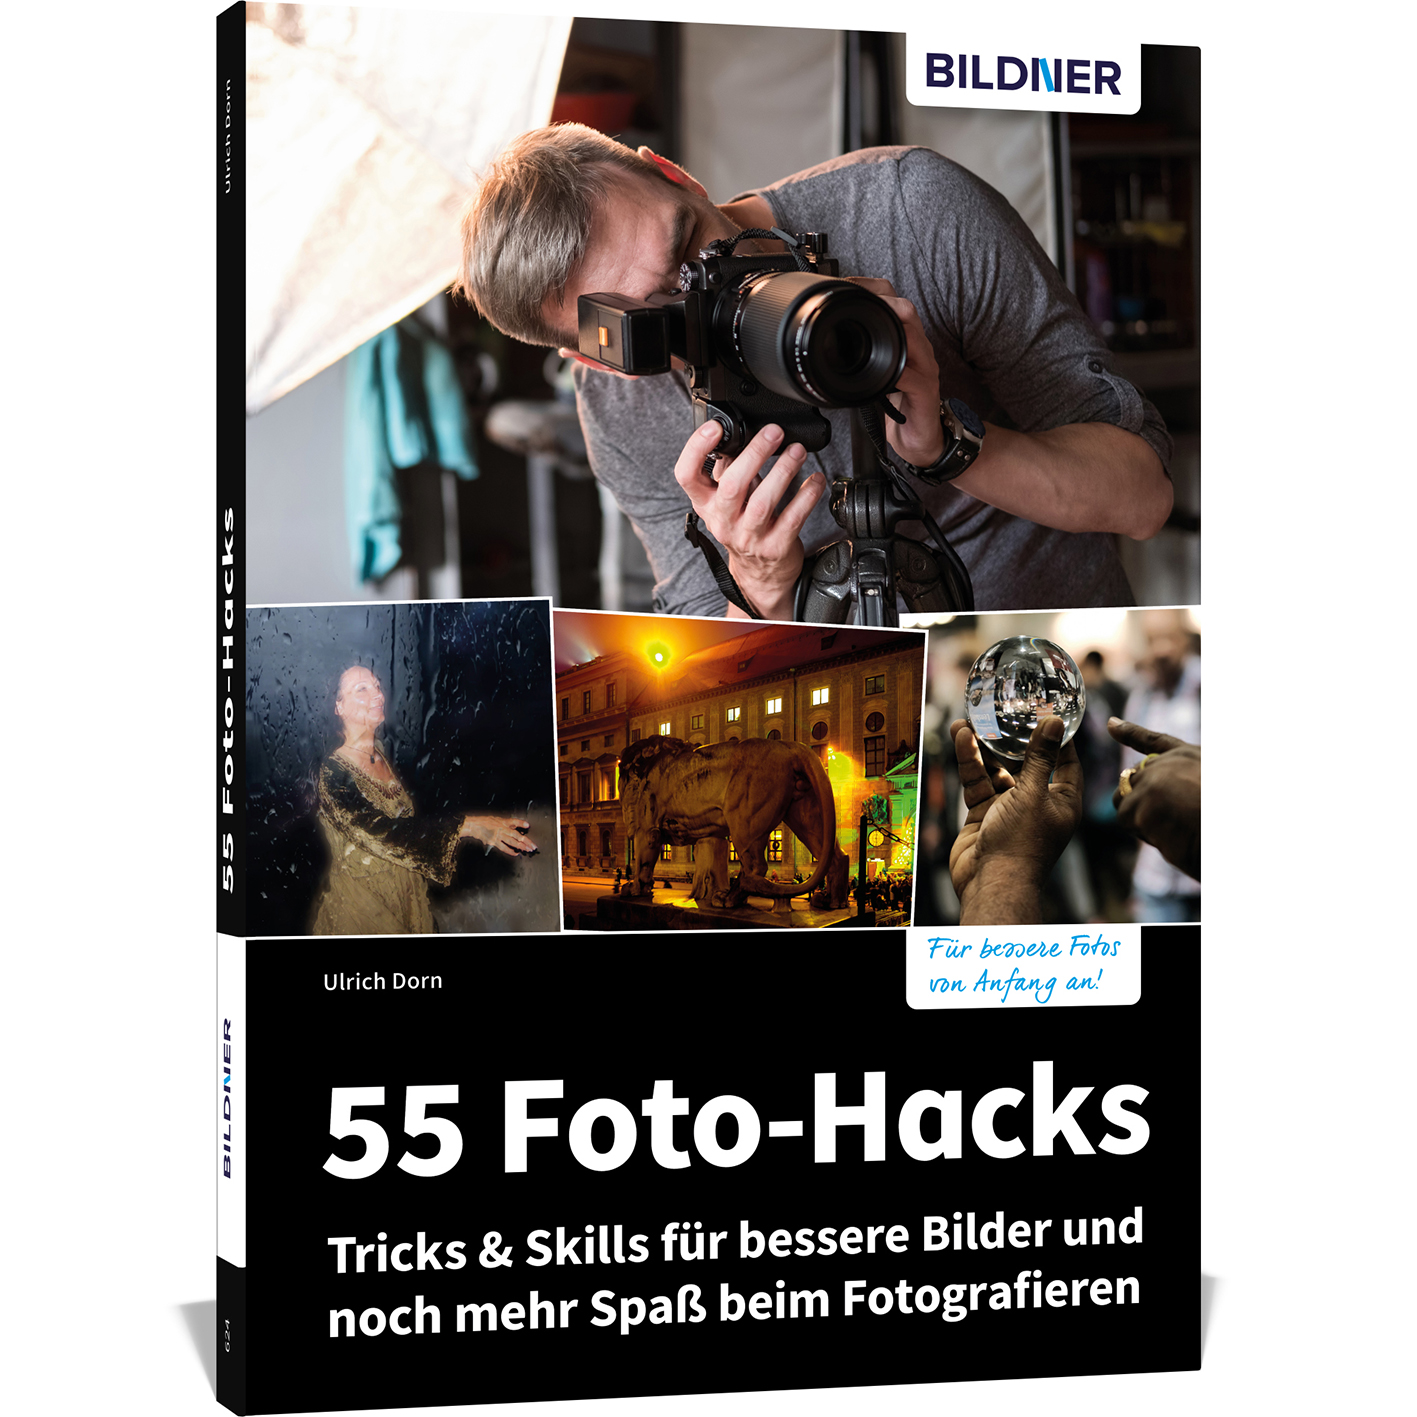 Spaß 55 Bilder – für & beim bessere noch Skills Tricks und Fotografieren Foto-Hacks mehr